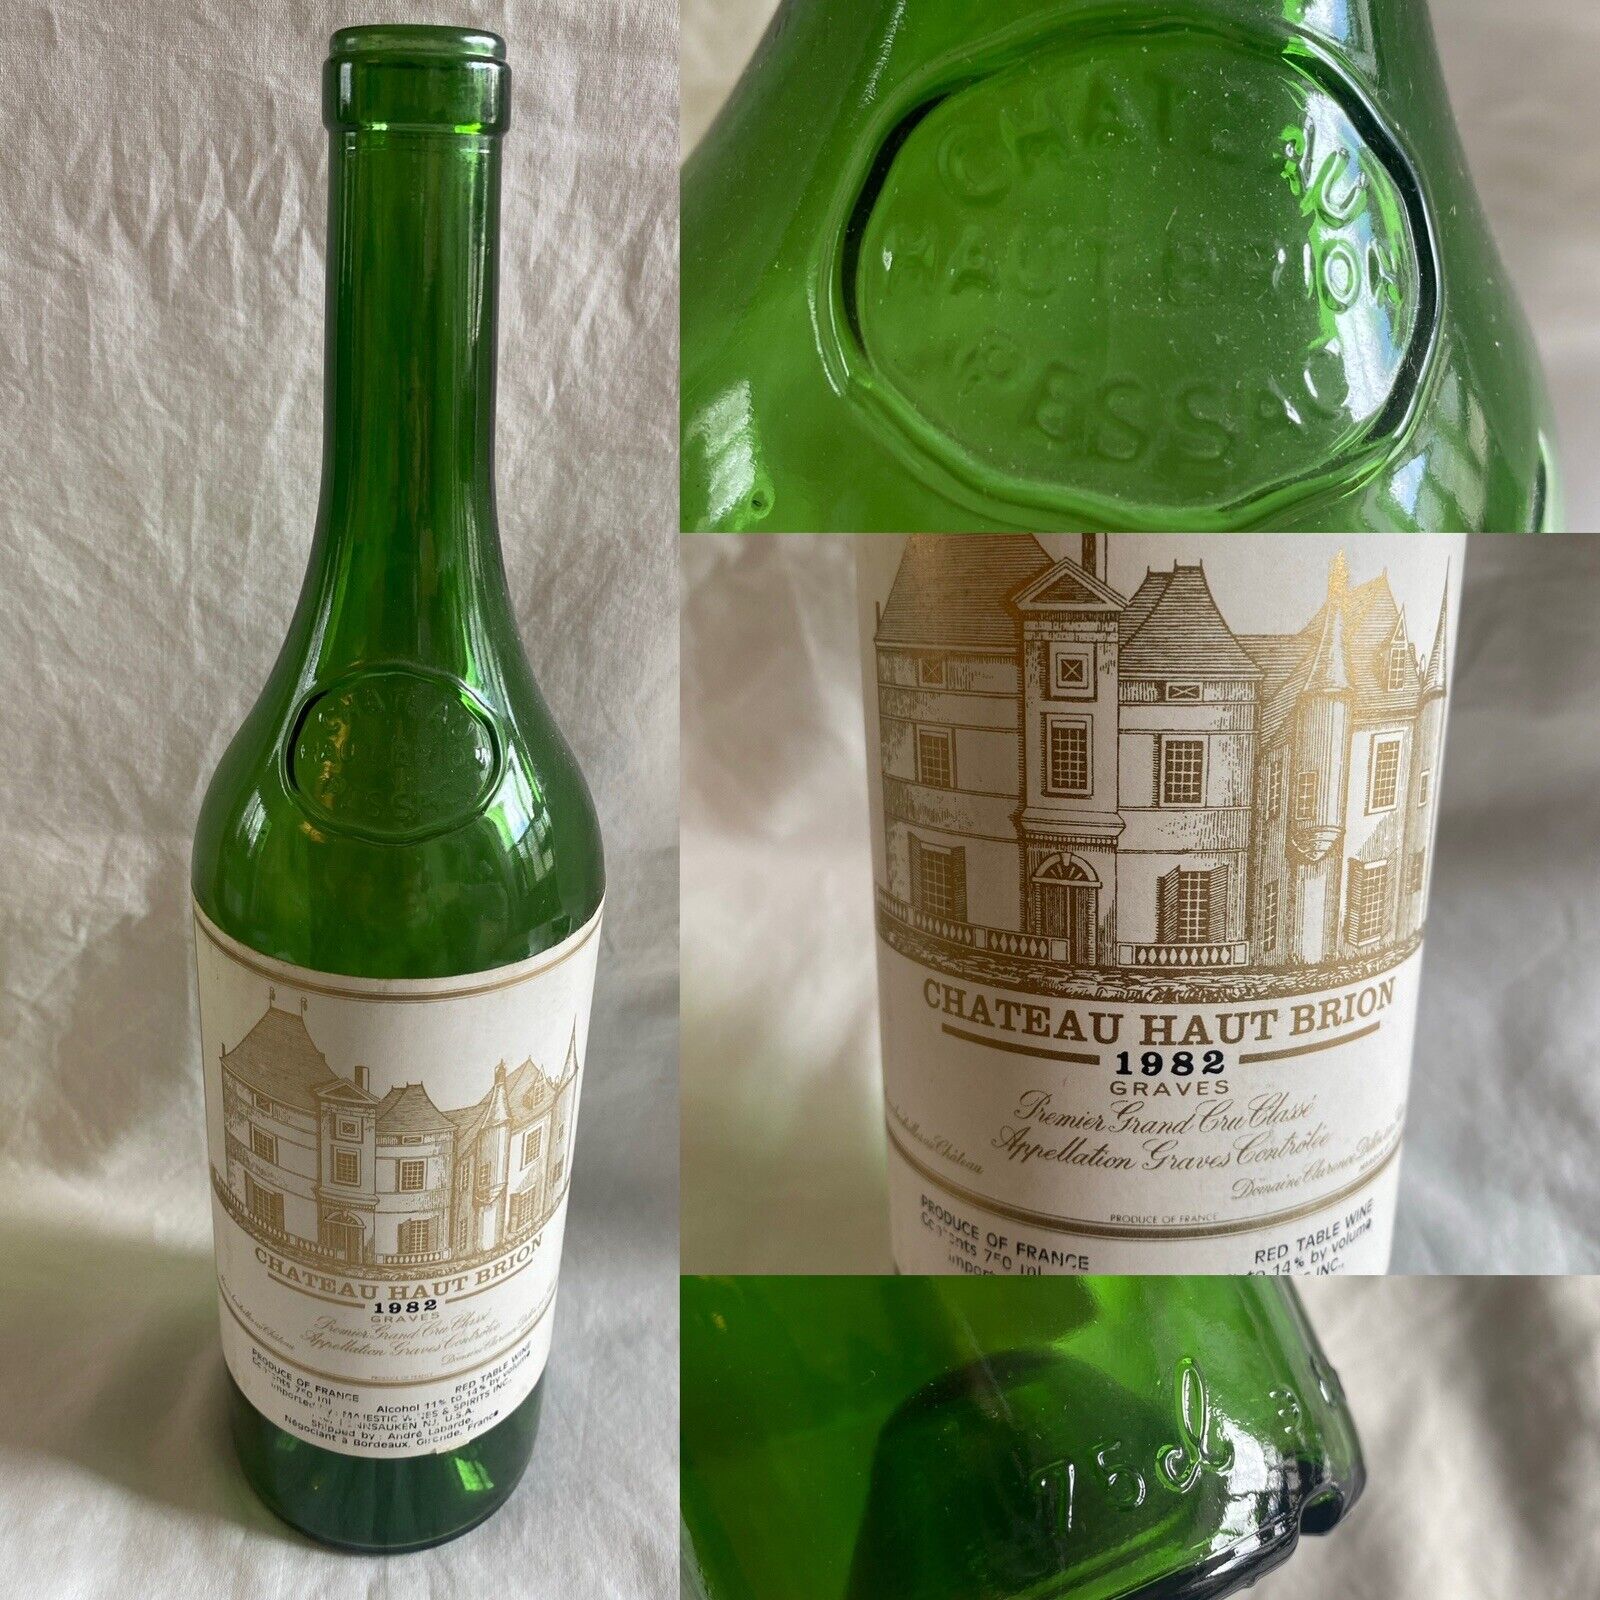 1982 Chateau Haut-Brion Grand Cru Classe Empty Wine Bottle (WA6)